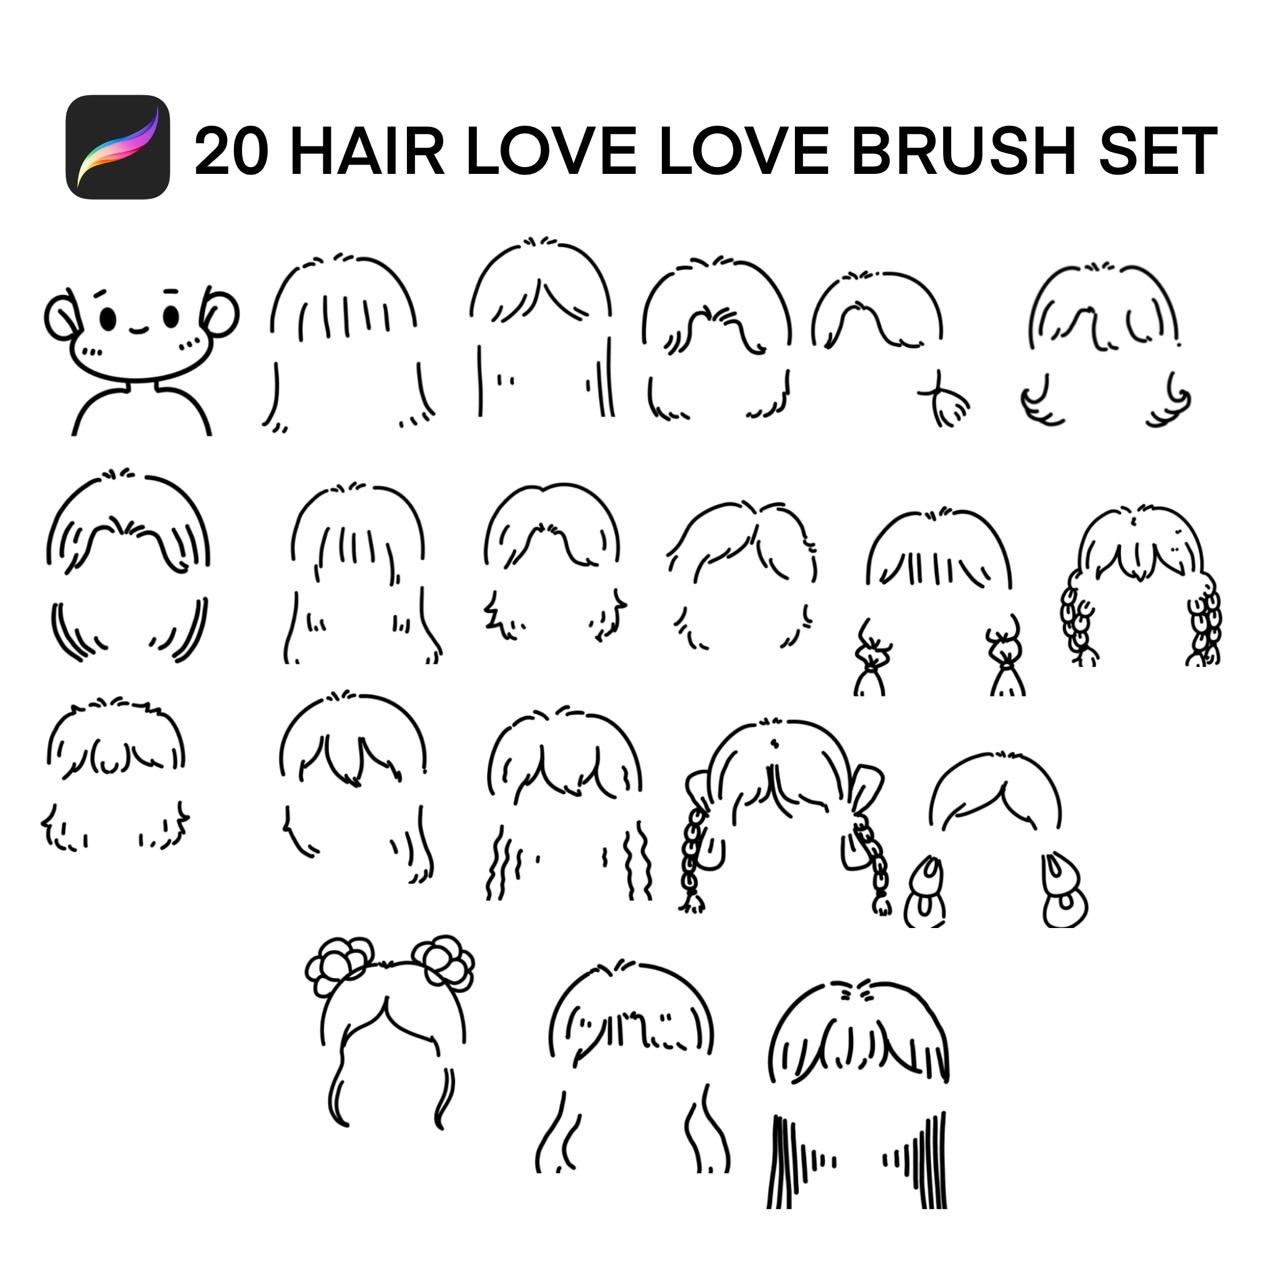 20 HAIR LOVE LOVE BRUSHES SET